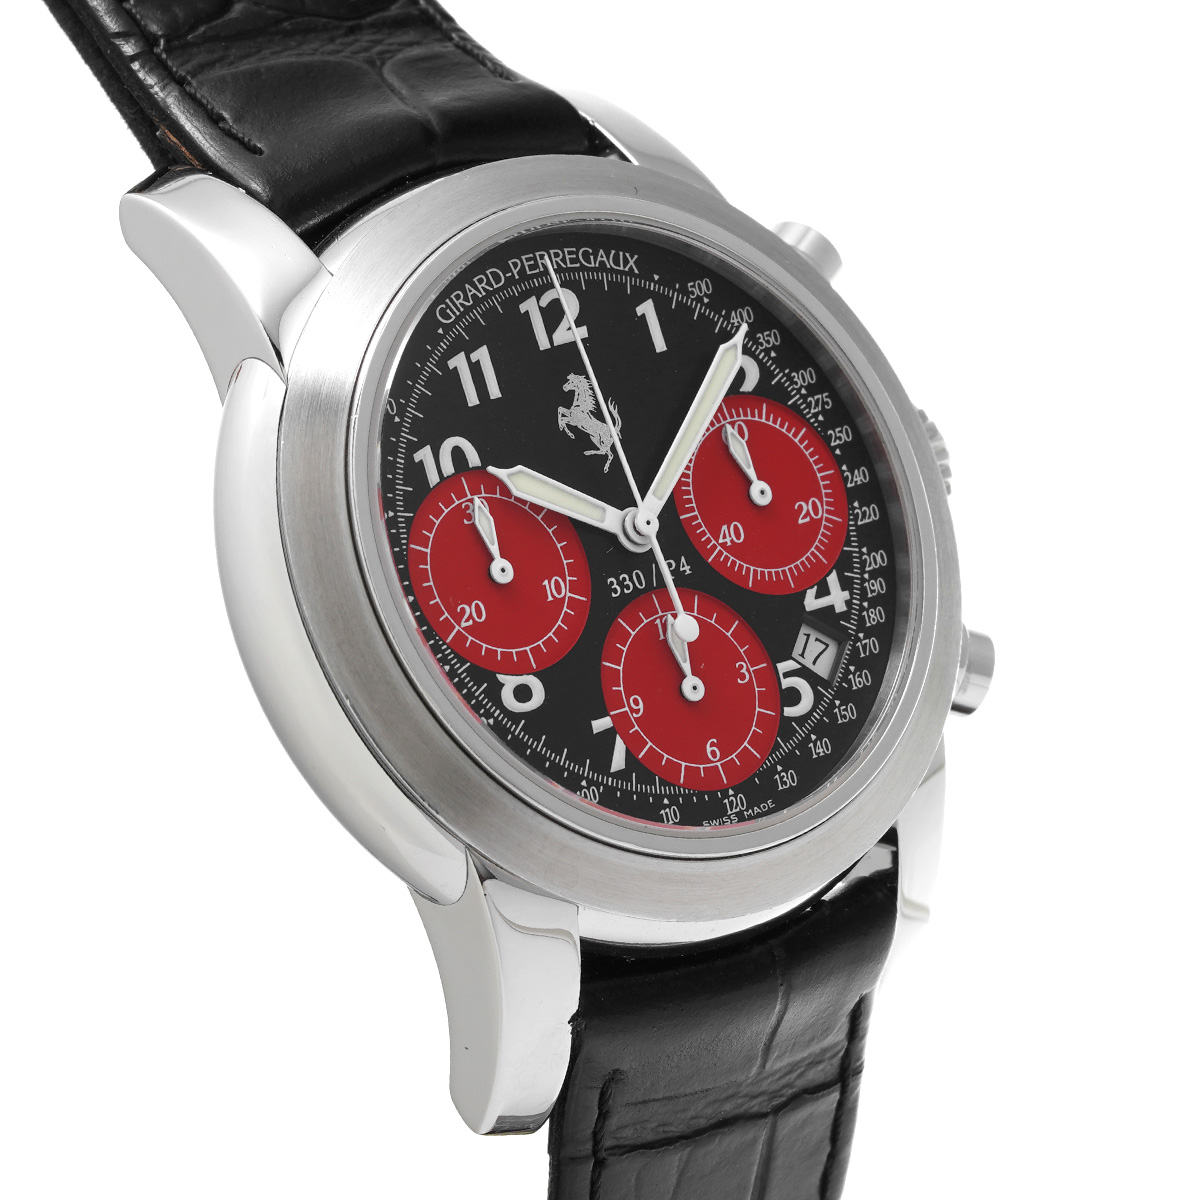 ジラール ペルゴ GIRARD-PERREGAUX 80280.0.11.6059 ブラック /レッド メンズ 腕時計